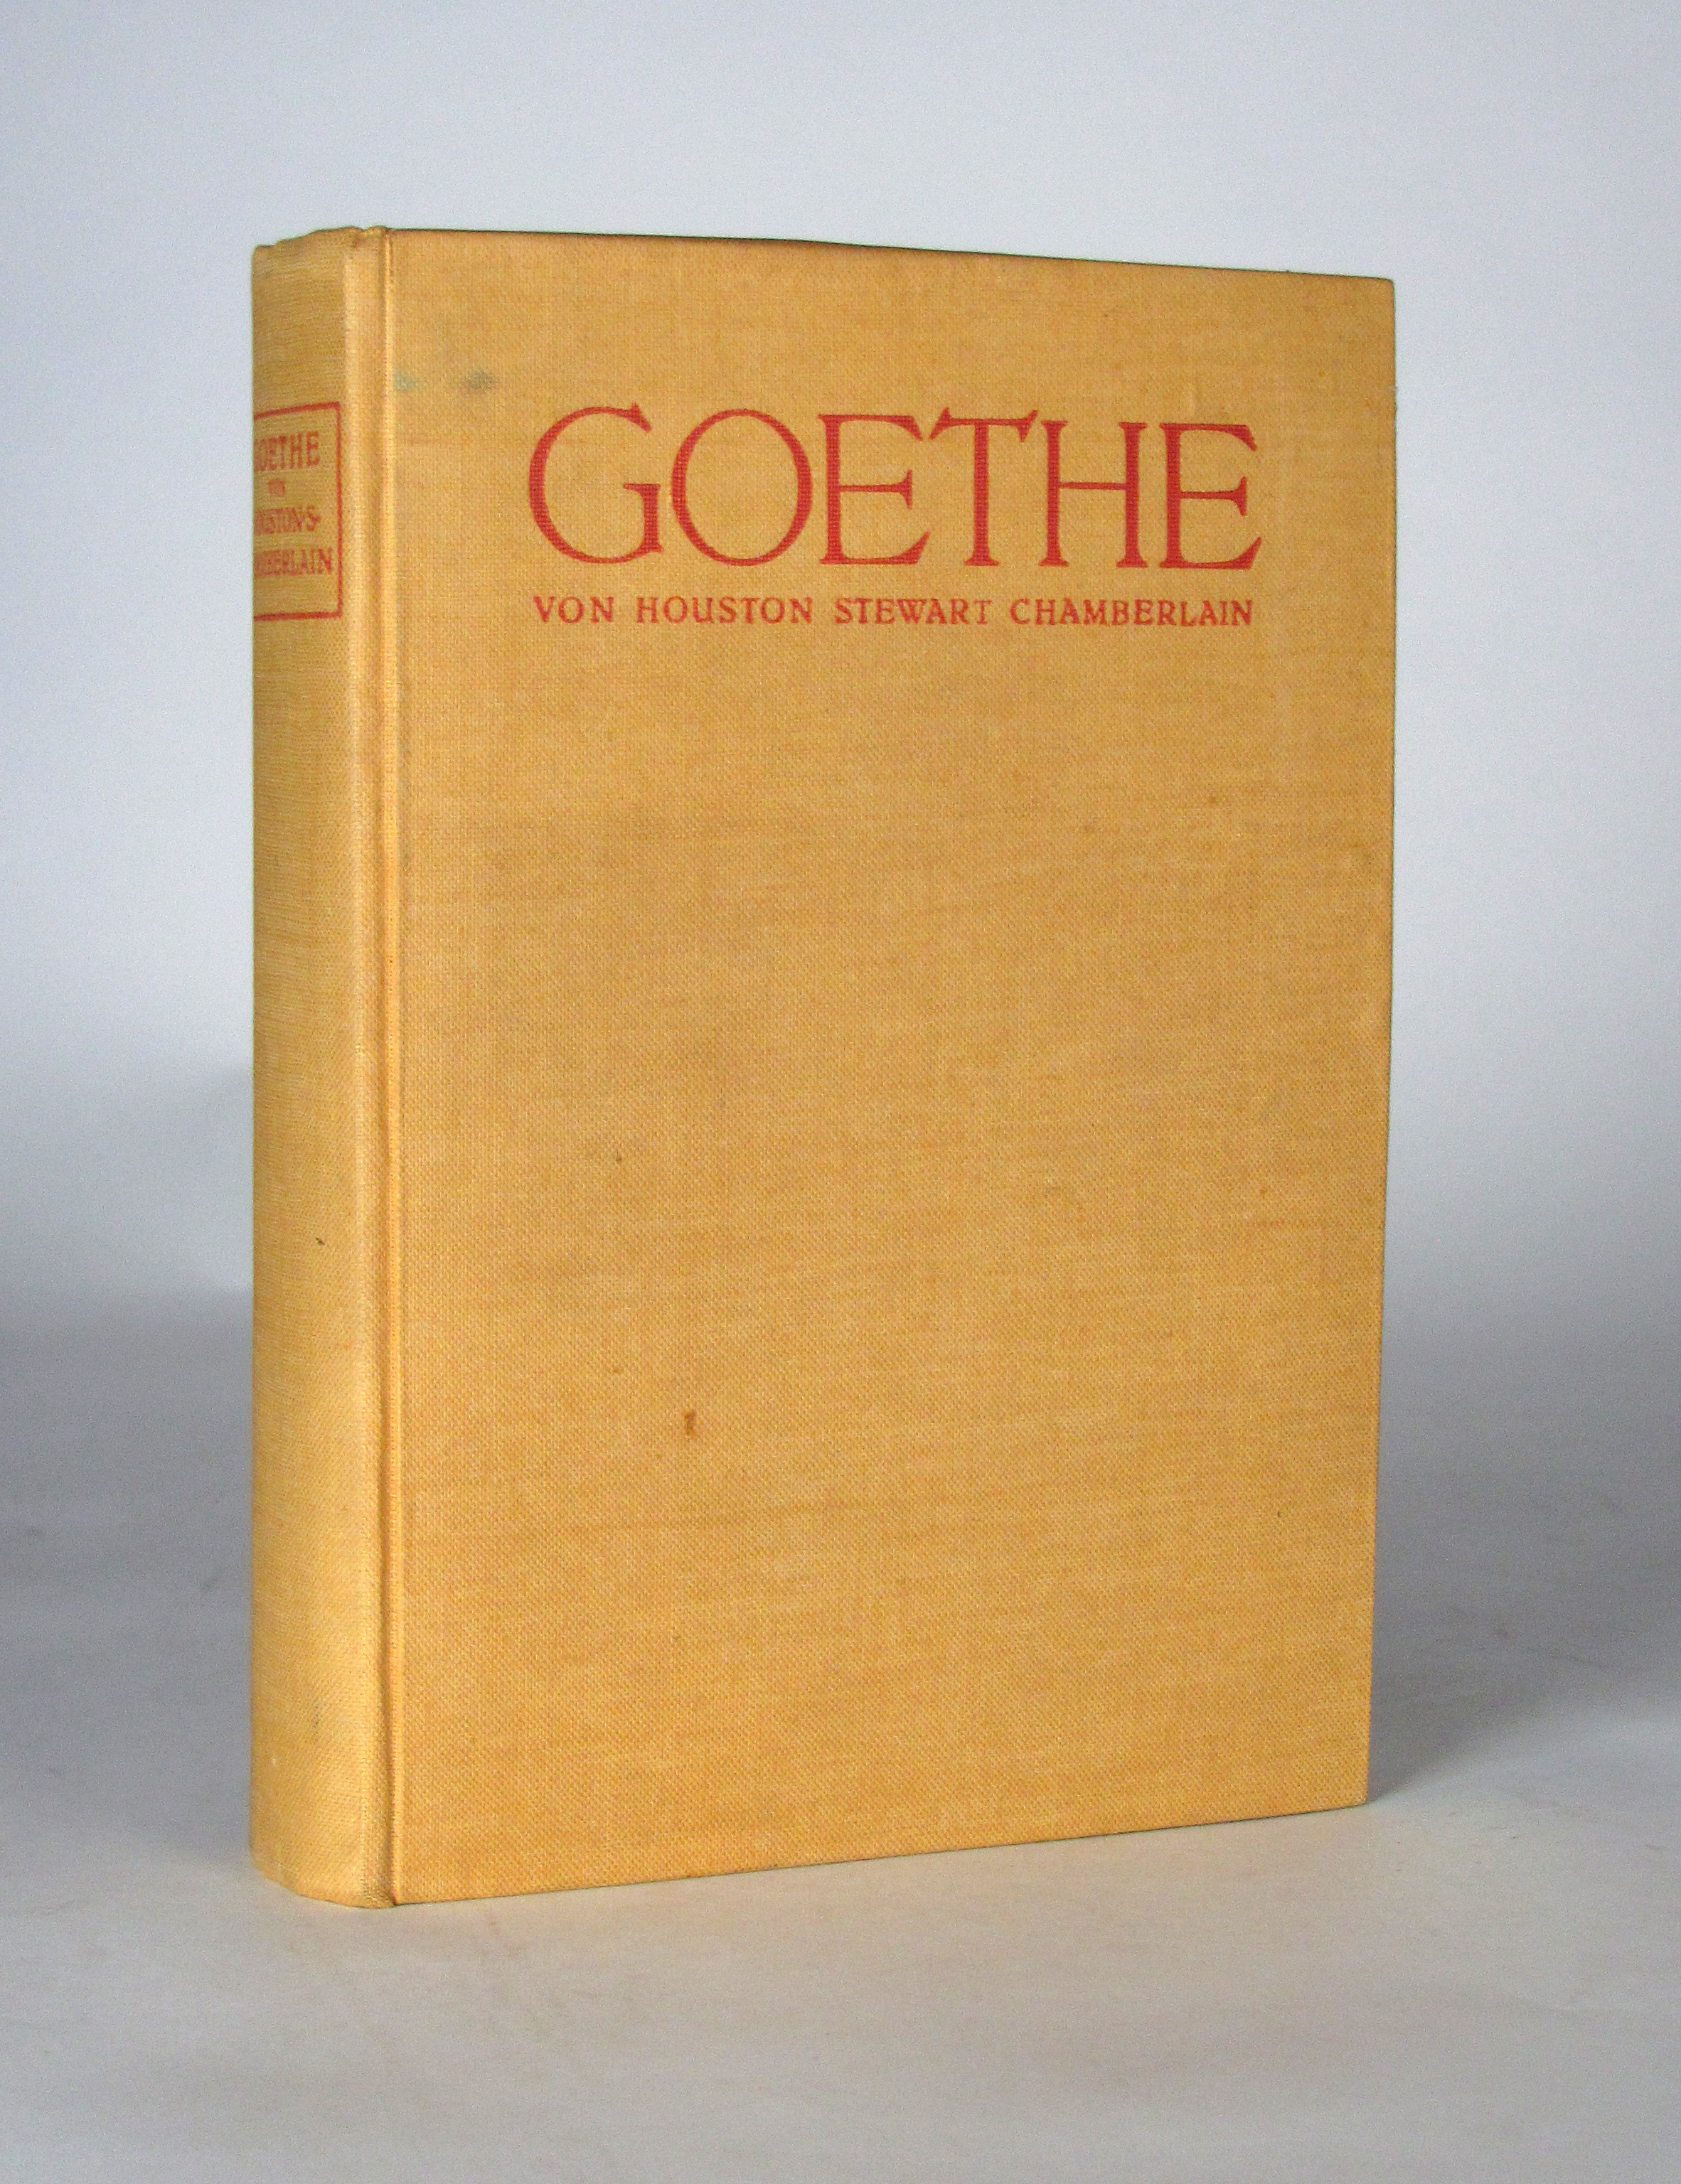 Chamberlain, Houston Steward, Goethe. Ungekürzte Volksausgabe zum Goethe-Jahr 1932.